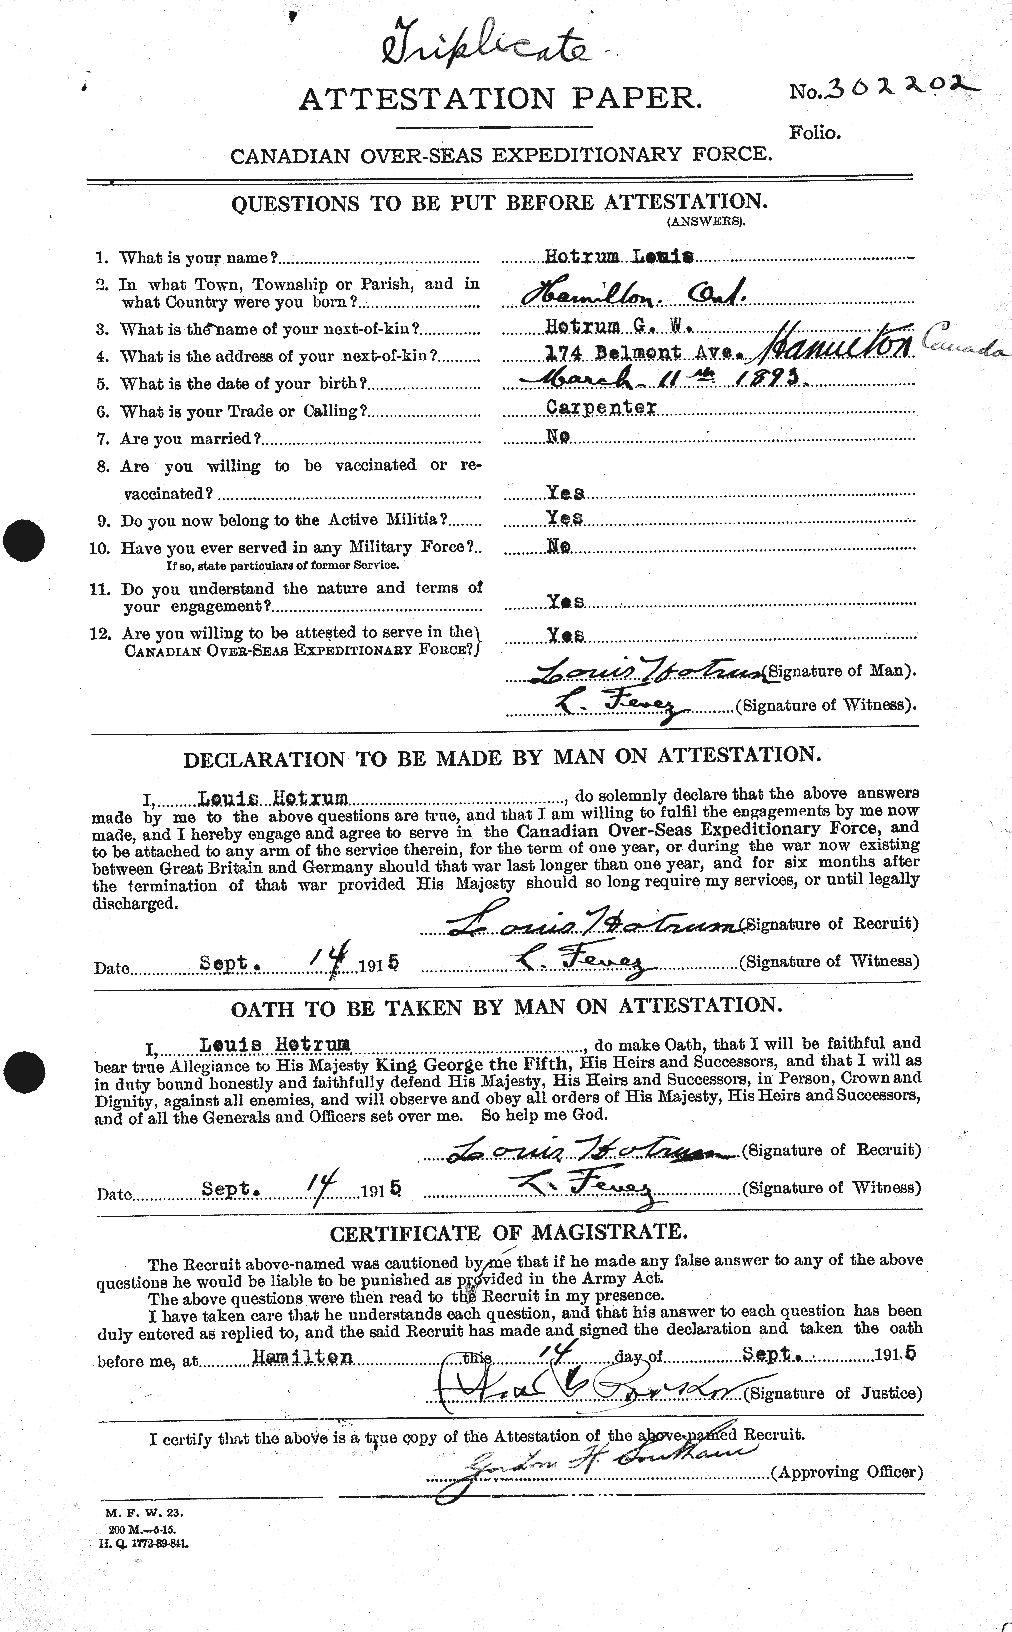 Dossiers du Personnel de la Première Guerre mondiale - CEC 401172a